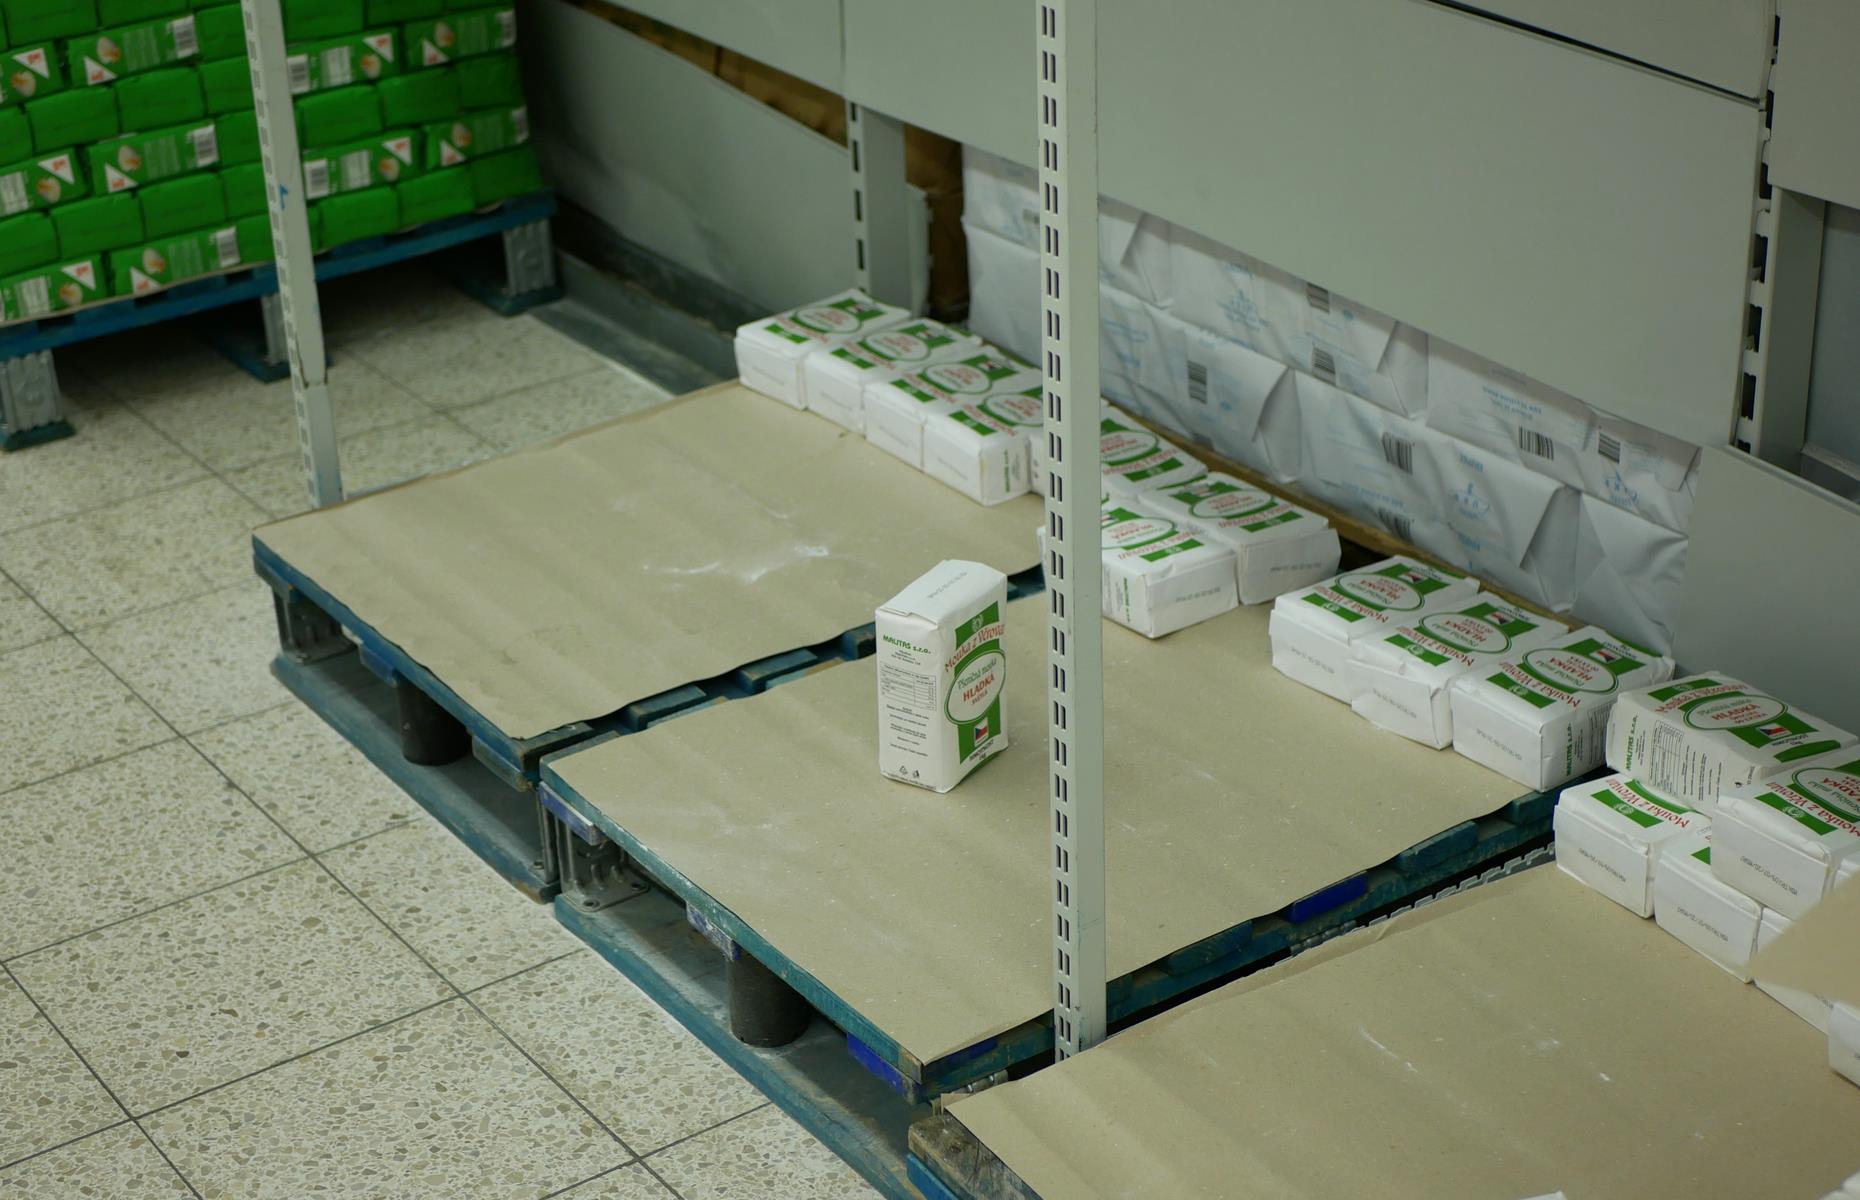 Pandemic product shortages: Flour